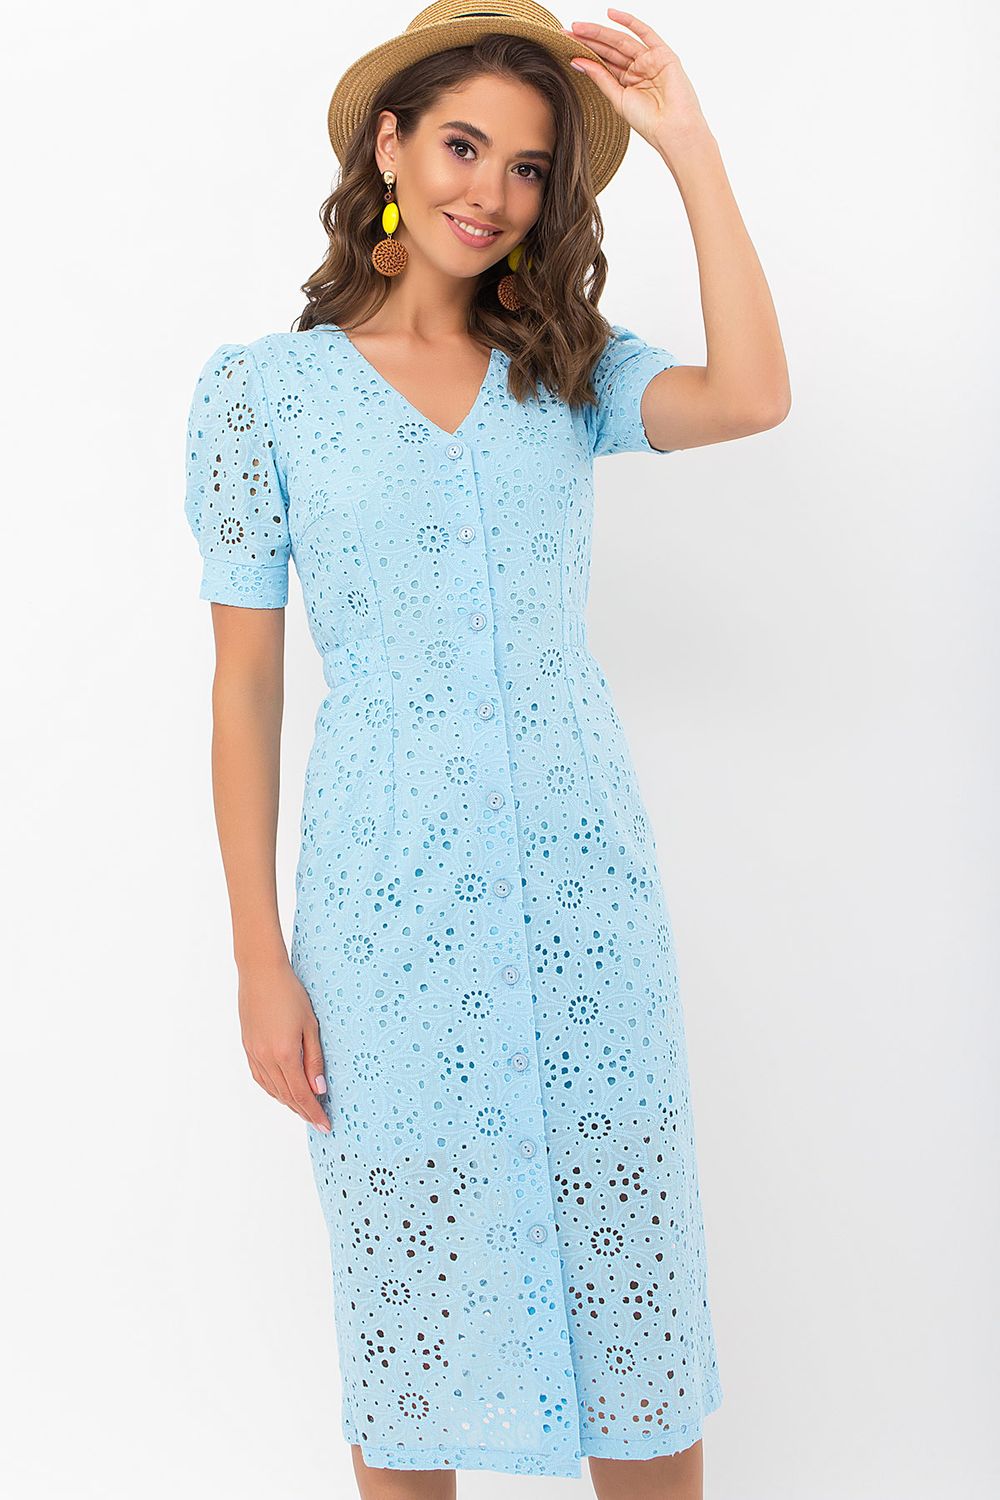 Модное летнее платье из прошвы голубое - фото